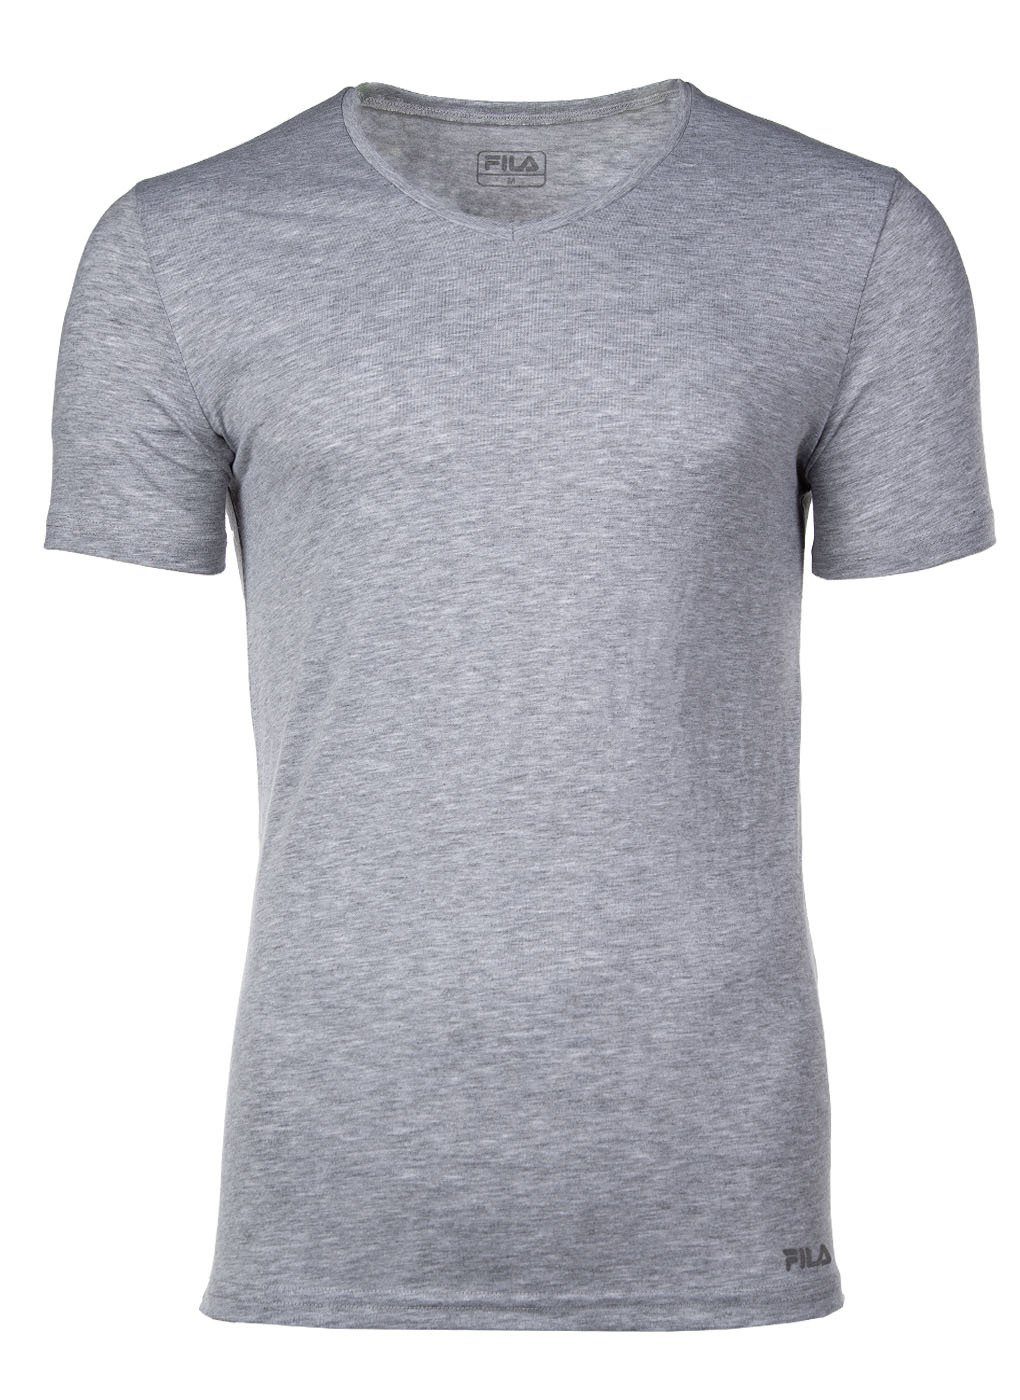 Top-Verkaufstrend Fila Unterhemd Herren Unterhemd Grau Single - Jersey V-Ausschnitt